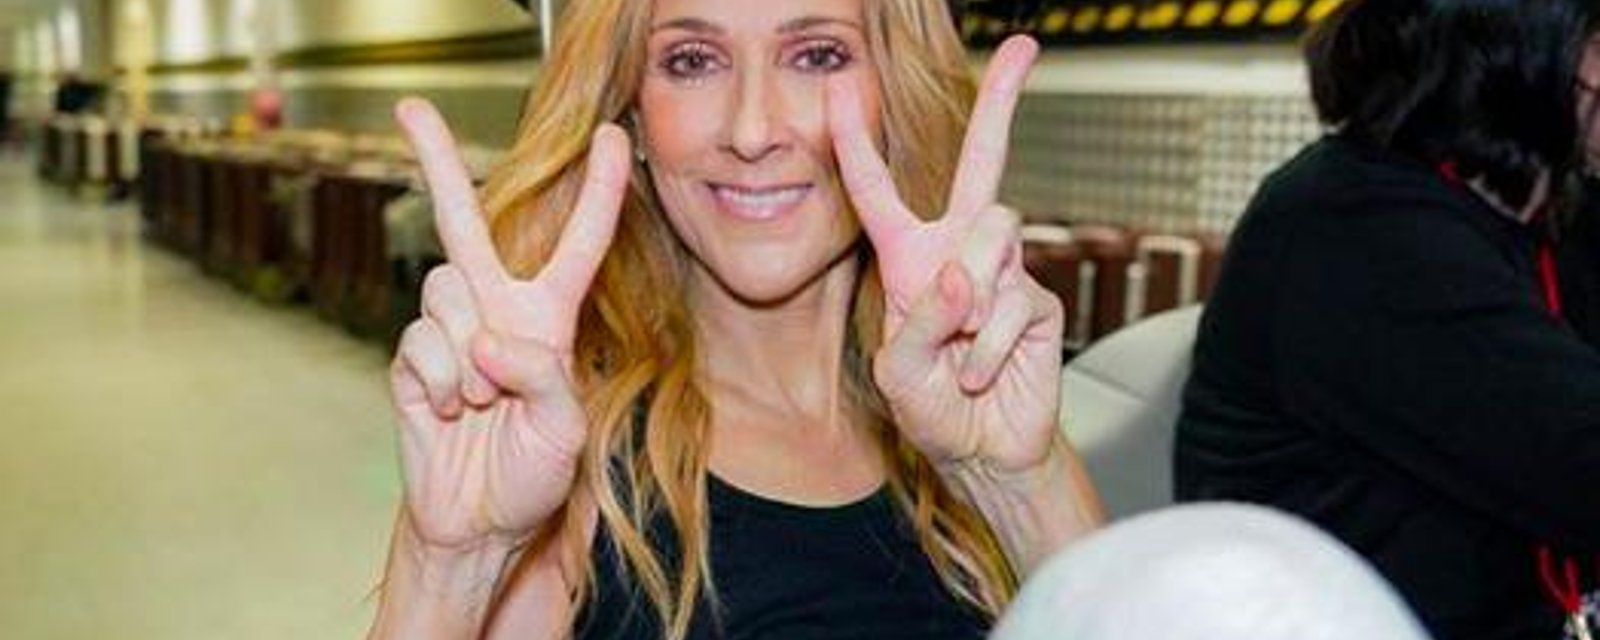 Céline Dion sème la confusion sur le Web avec une nouvelle photo sexy que certains jugent déplacée